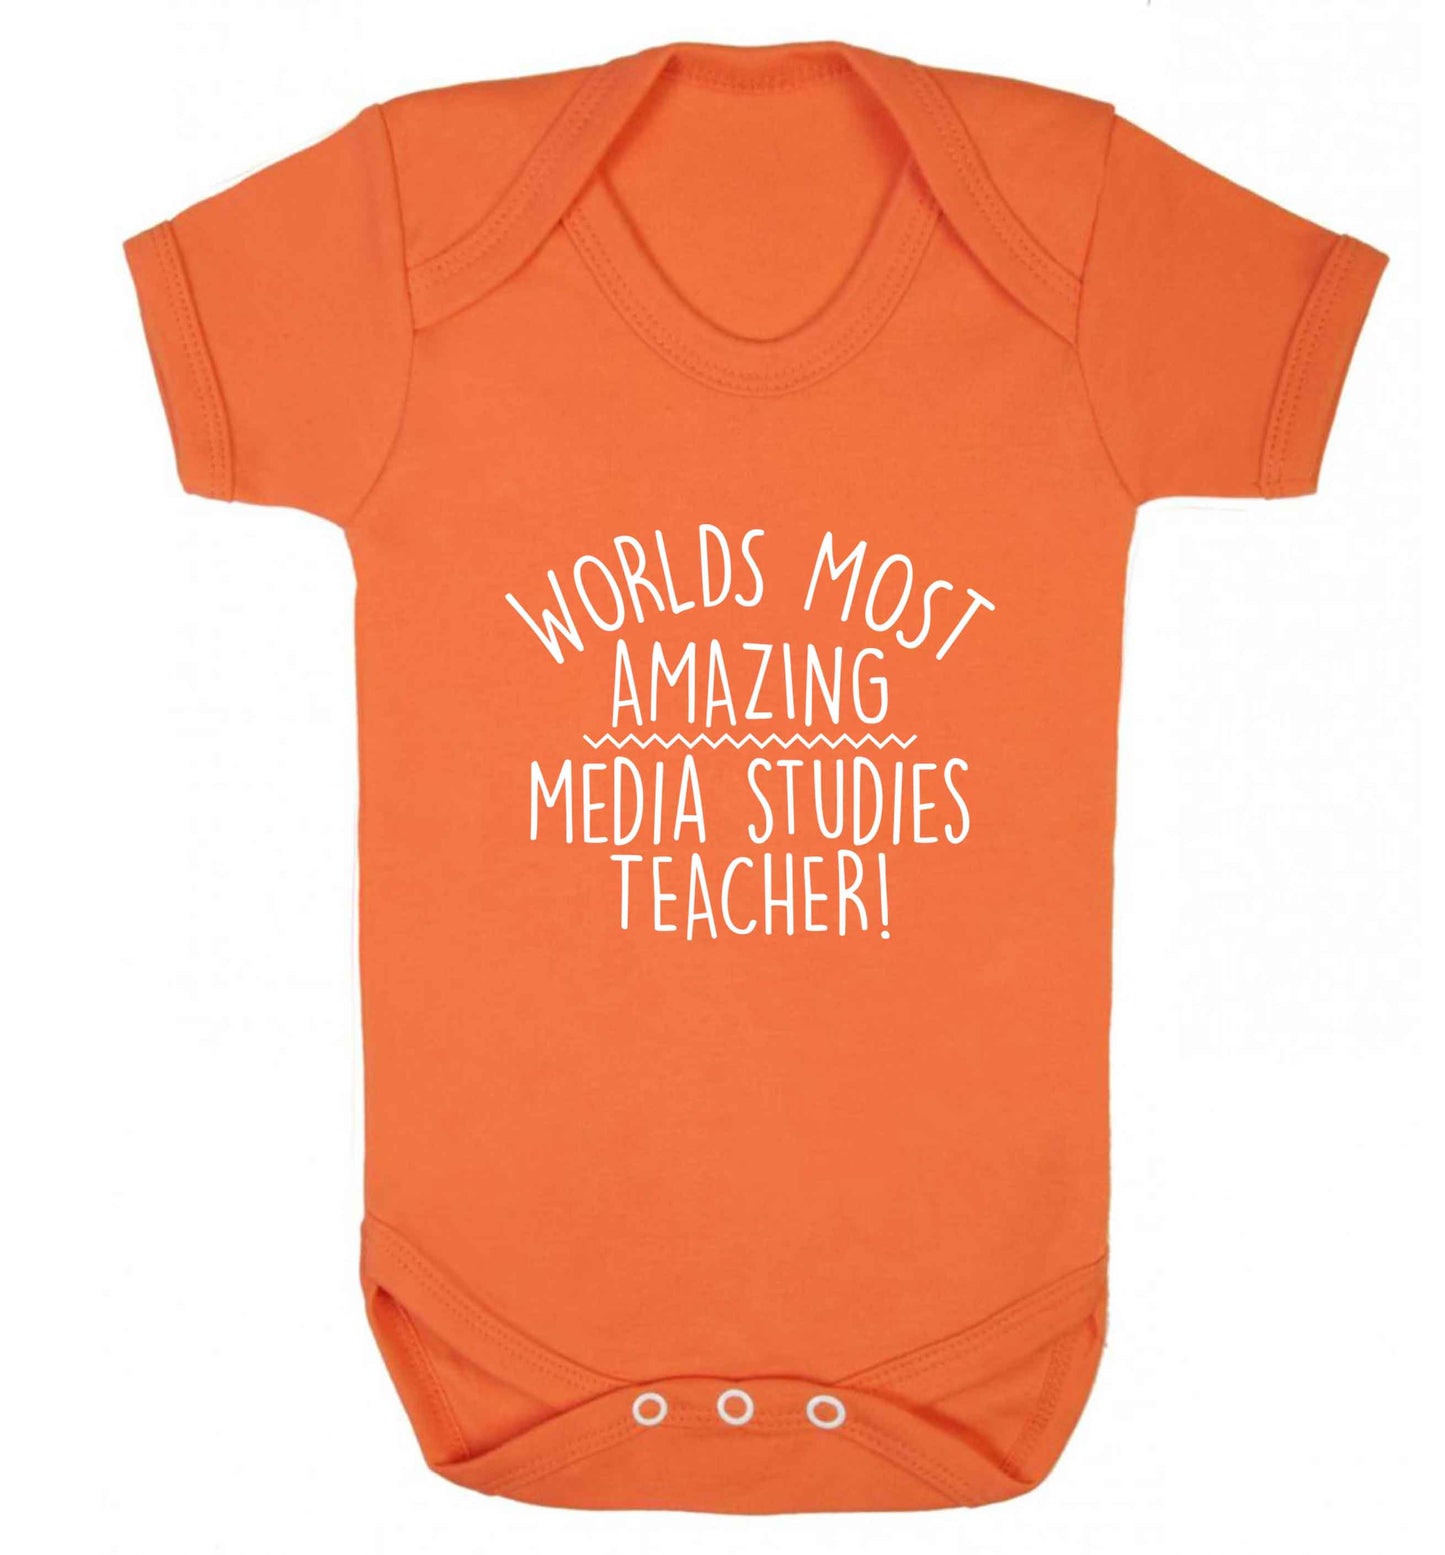 Worlds most amazing media studies teacher baby vest orange 18-24 months